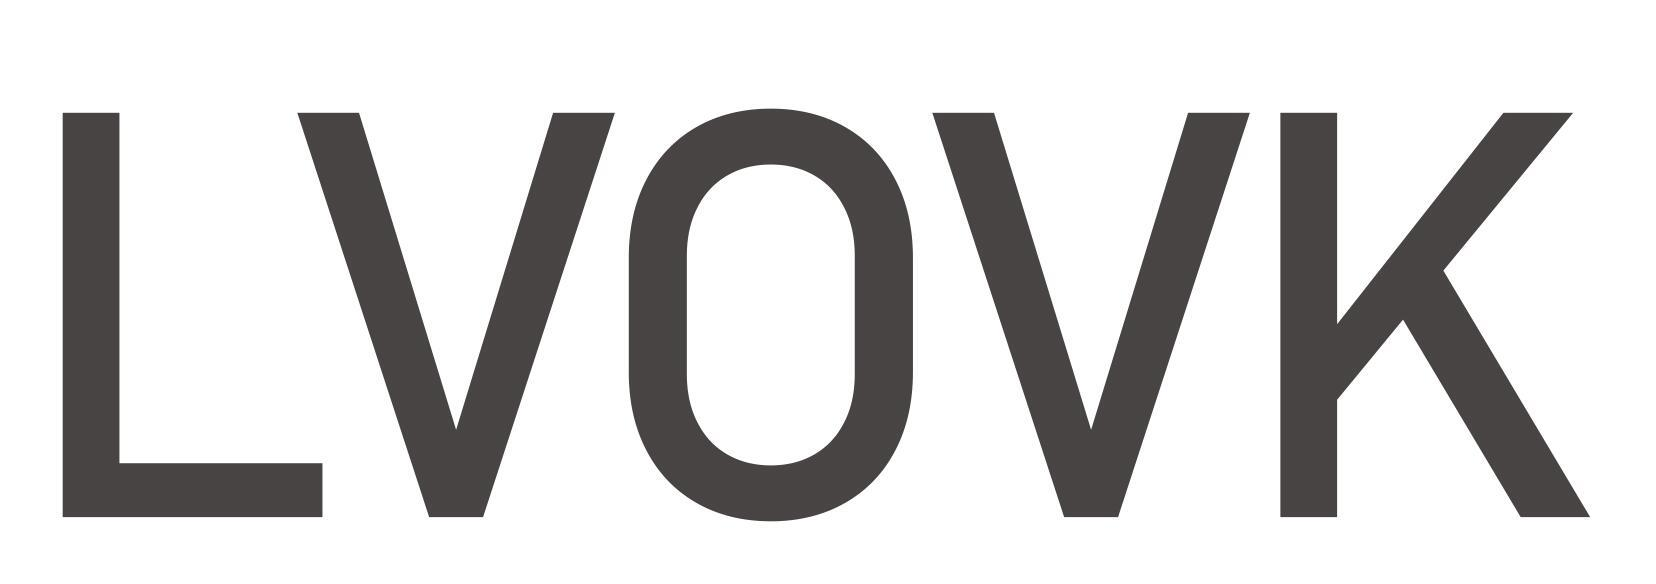 18类-箱包皮具LVOVK商标转让